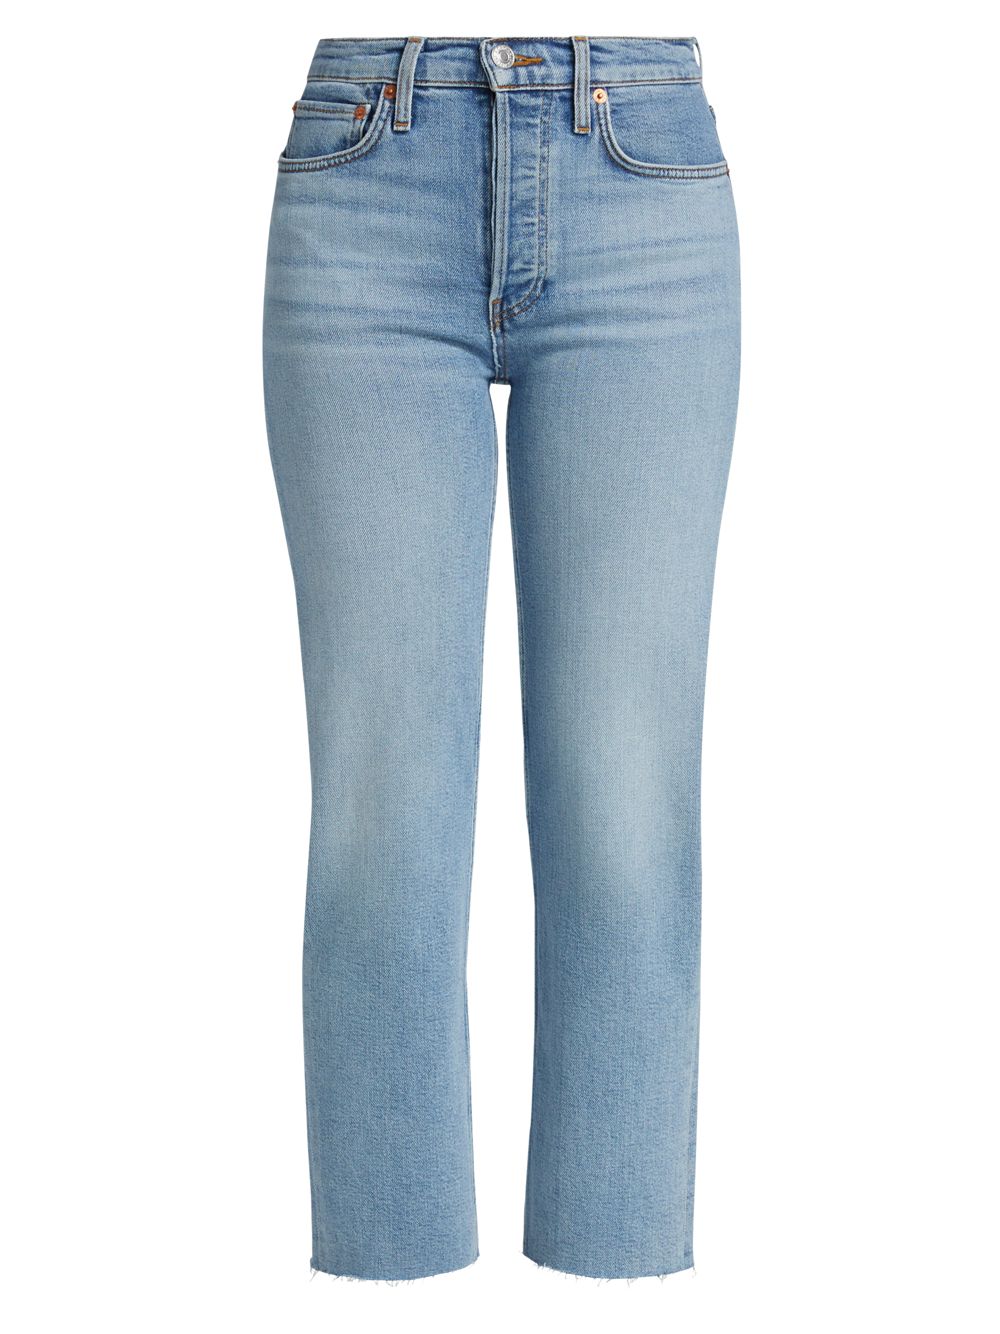 Джинсы прямого кроя с высокой посадкой Re/done джинсы прямого кроя ruth с высокой посадкой l agence цвет atwood blue